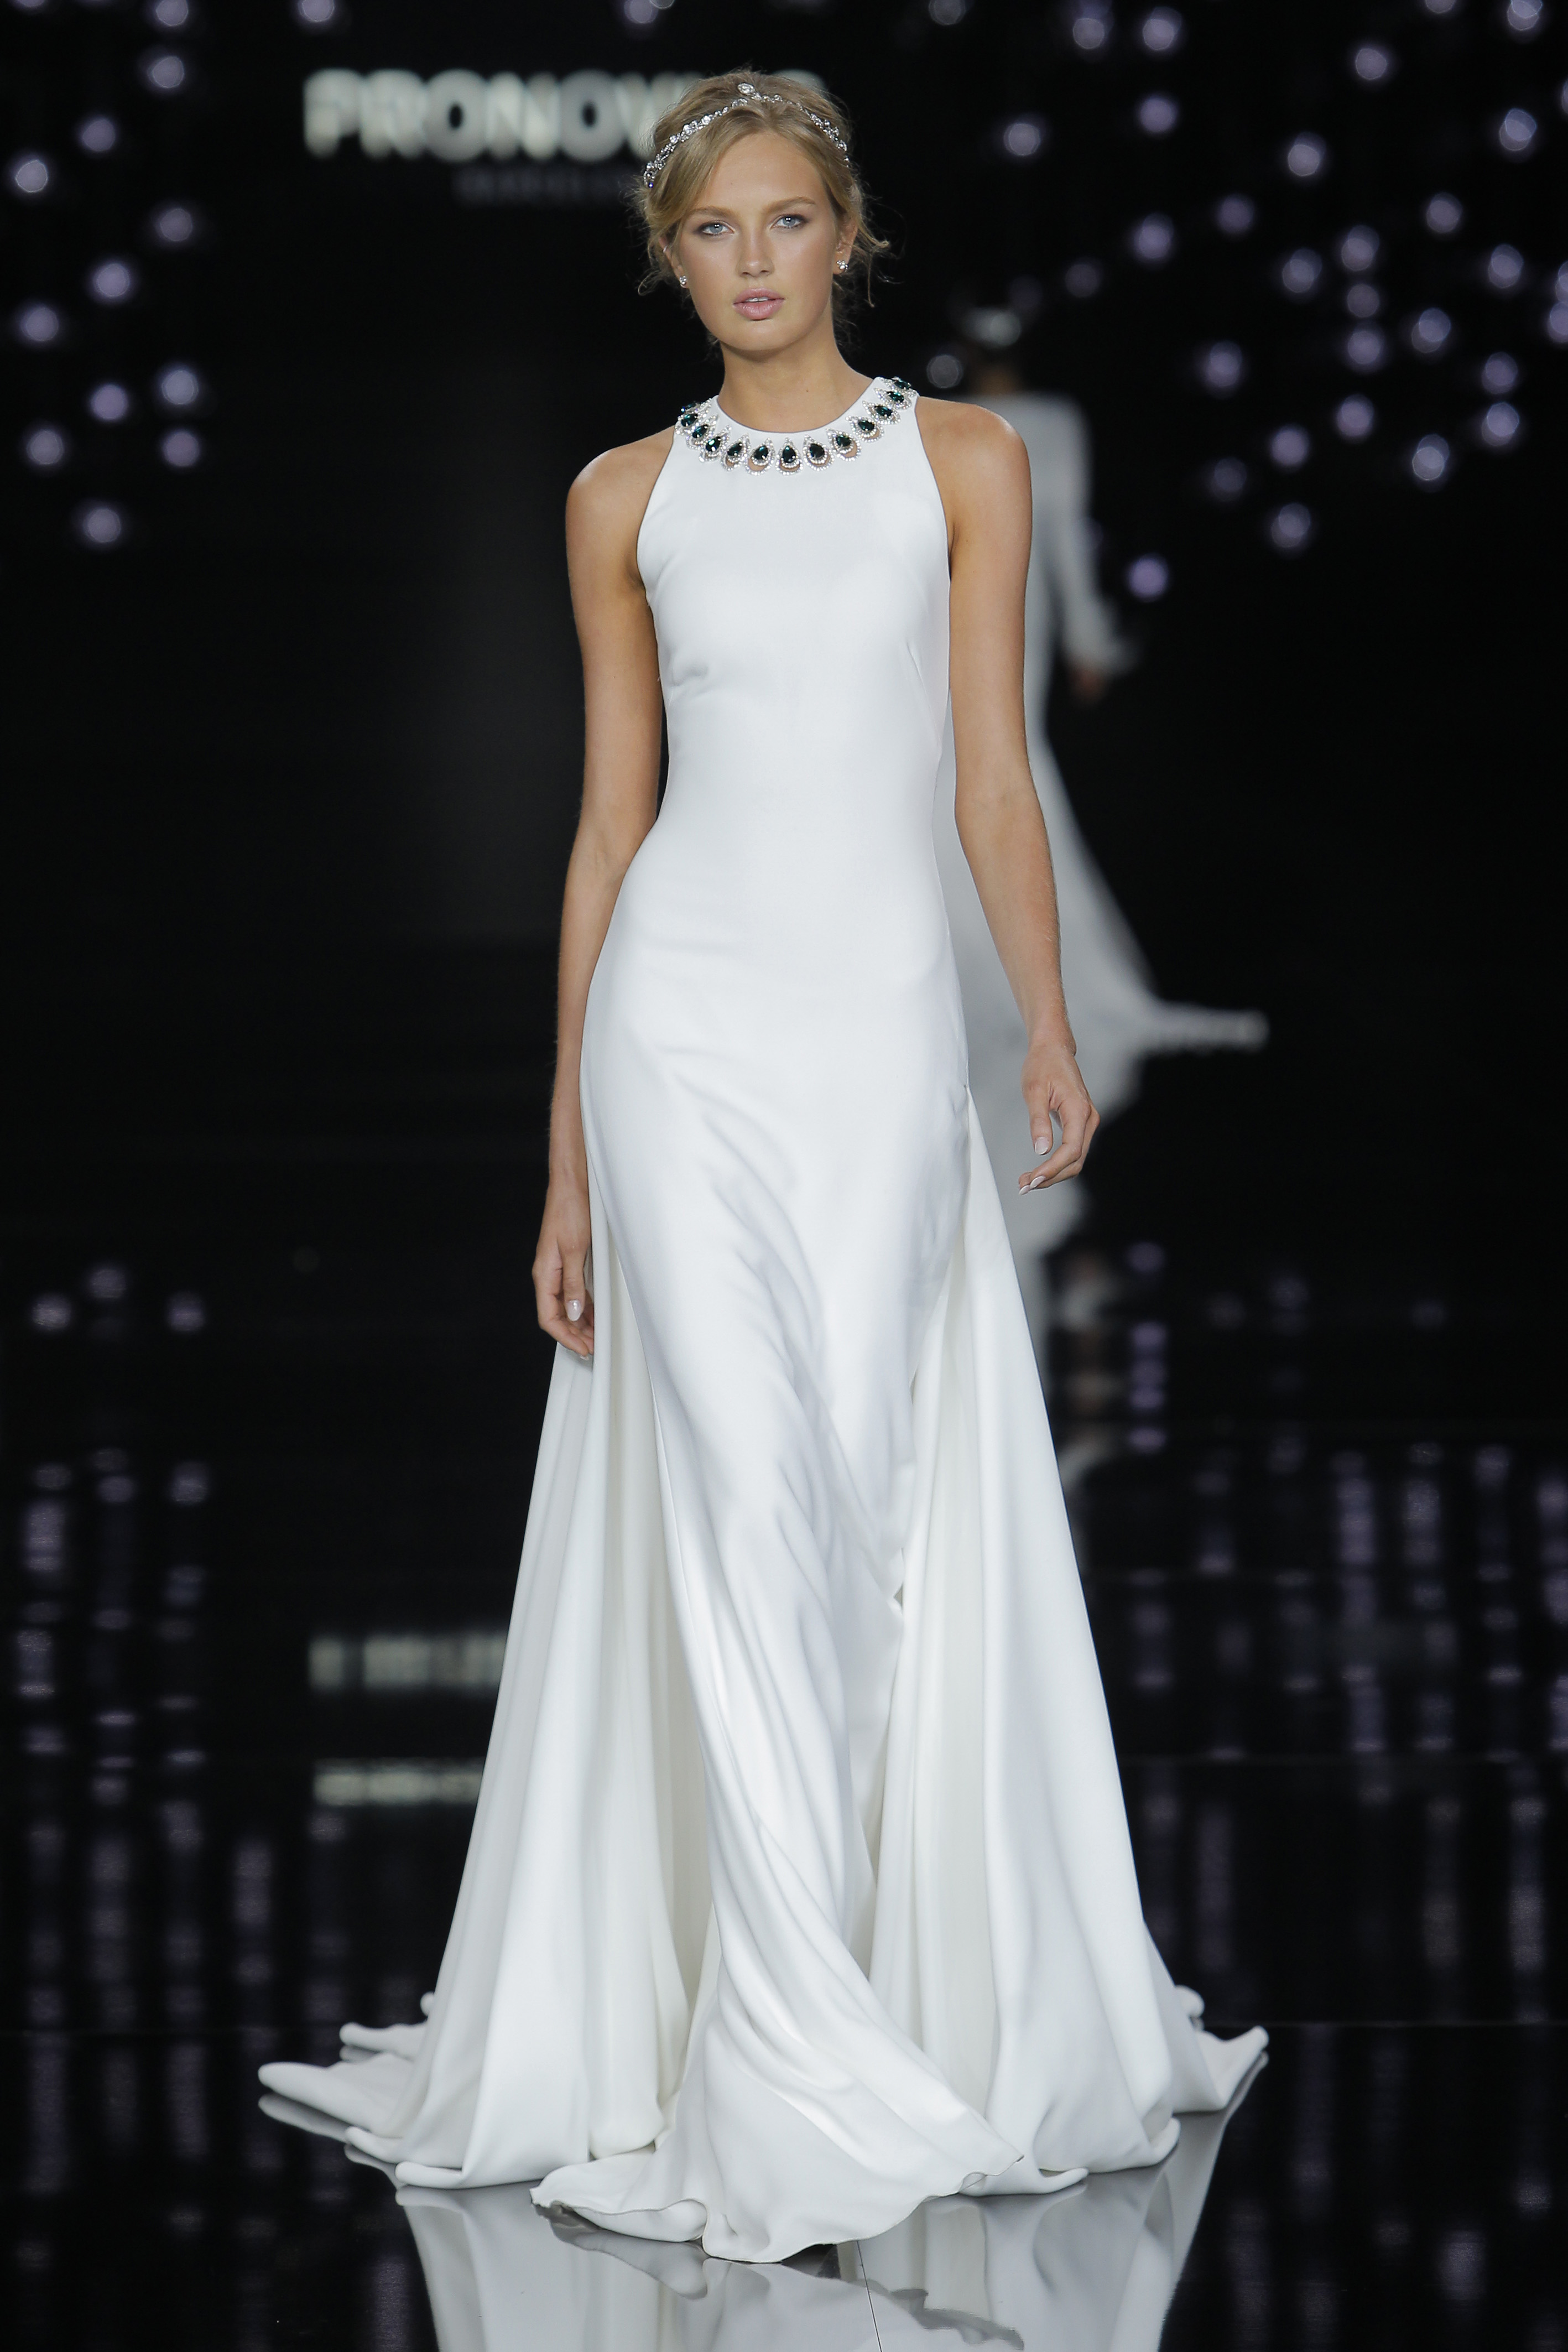 Credits: Barcelona Bridal Fashion Week
<a href="http://zankyou.9nl.de/n3ig" target="_blank"> Faça a sua marcação para experimentar este vestido! </a>